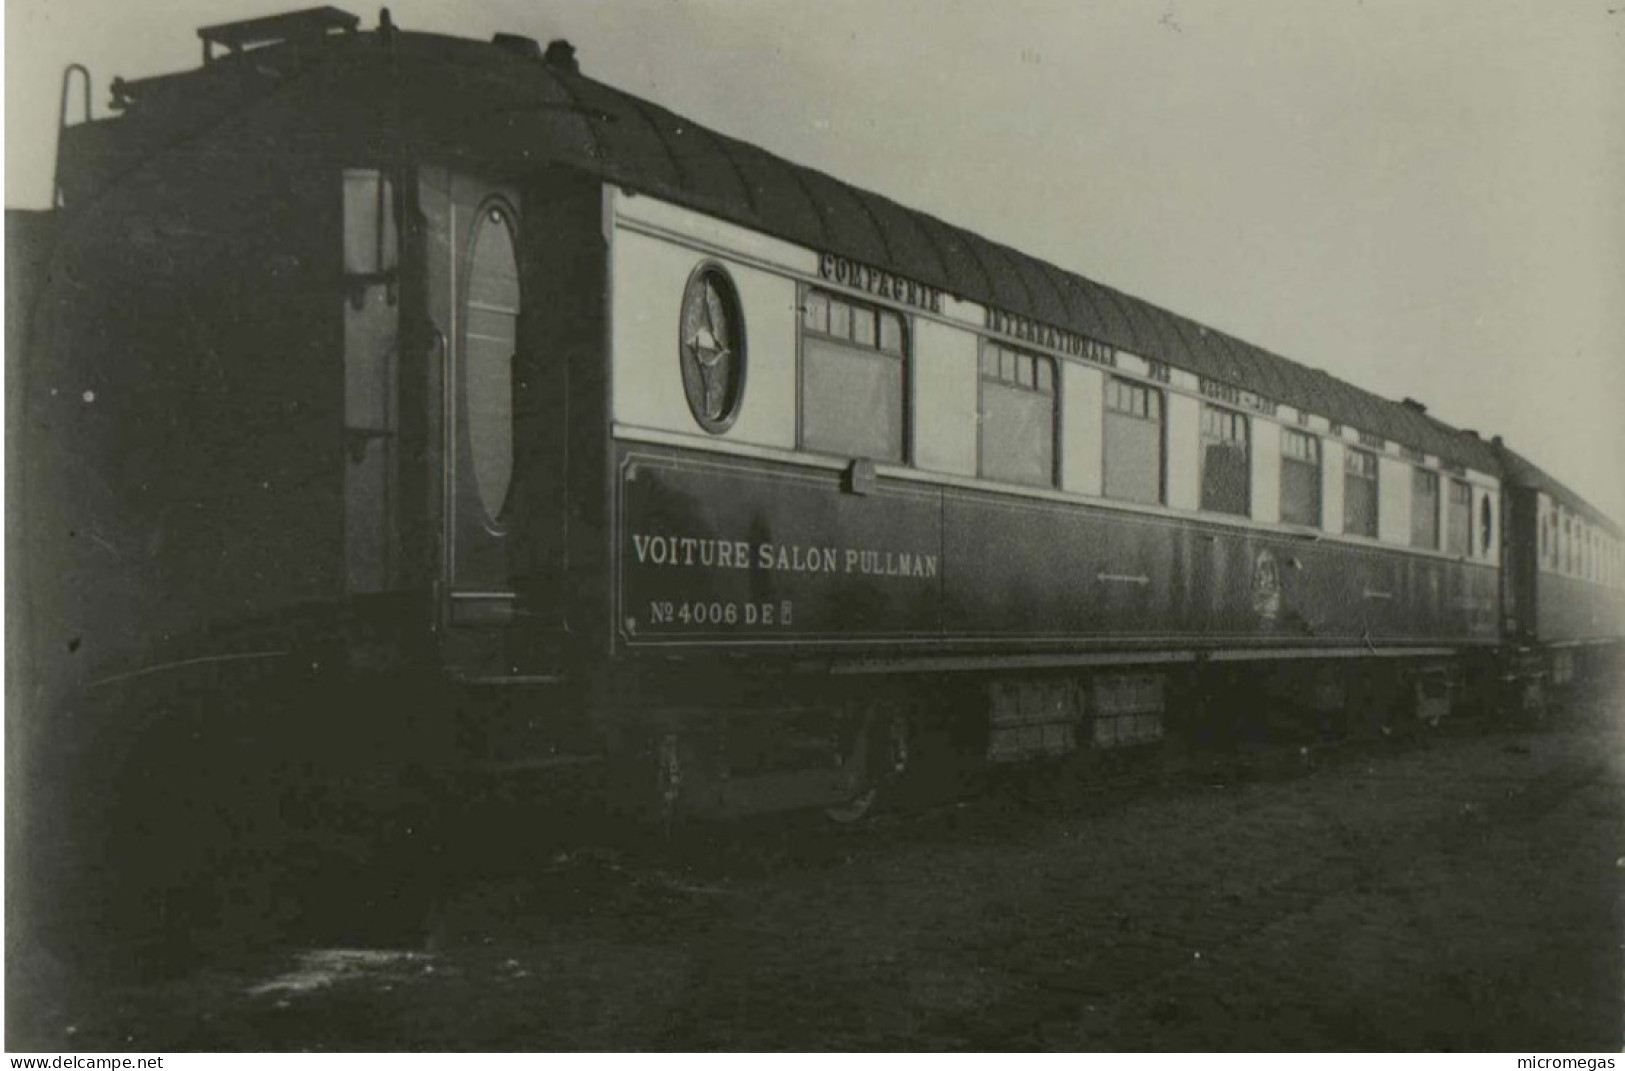 Reproduction - Voiture-Salon Pullman N° 4006 - Flèche D'Or - Trains